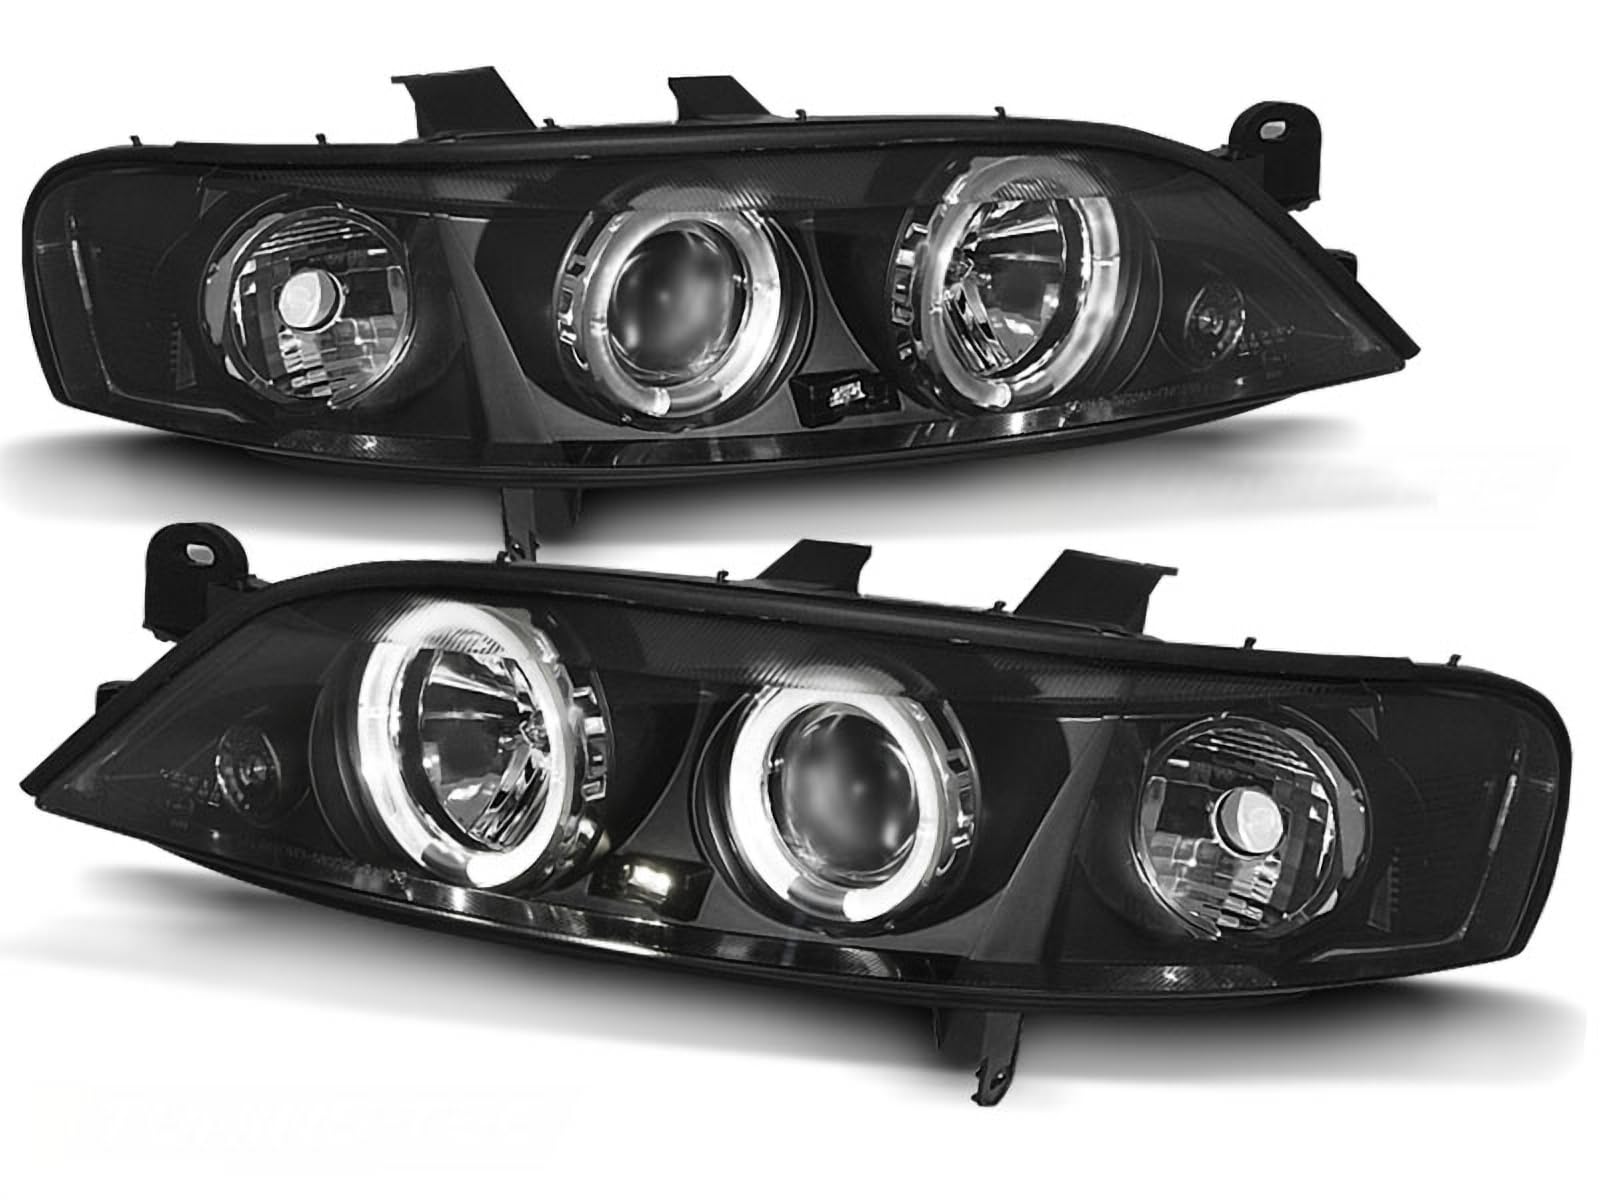 LED Angel Eyes Scheinwerfer Set in schwarz für Opel Vectra B 96-99 von CR-Lights